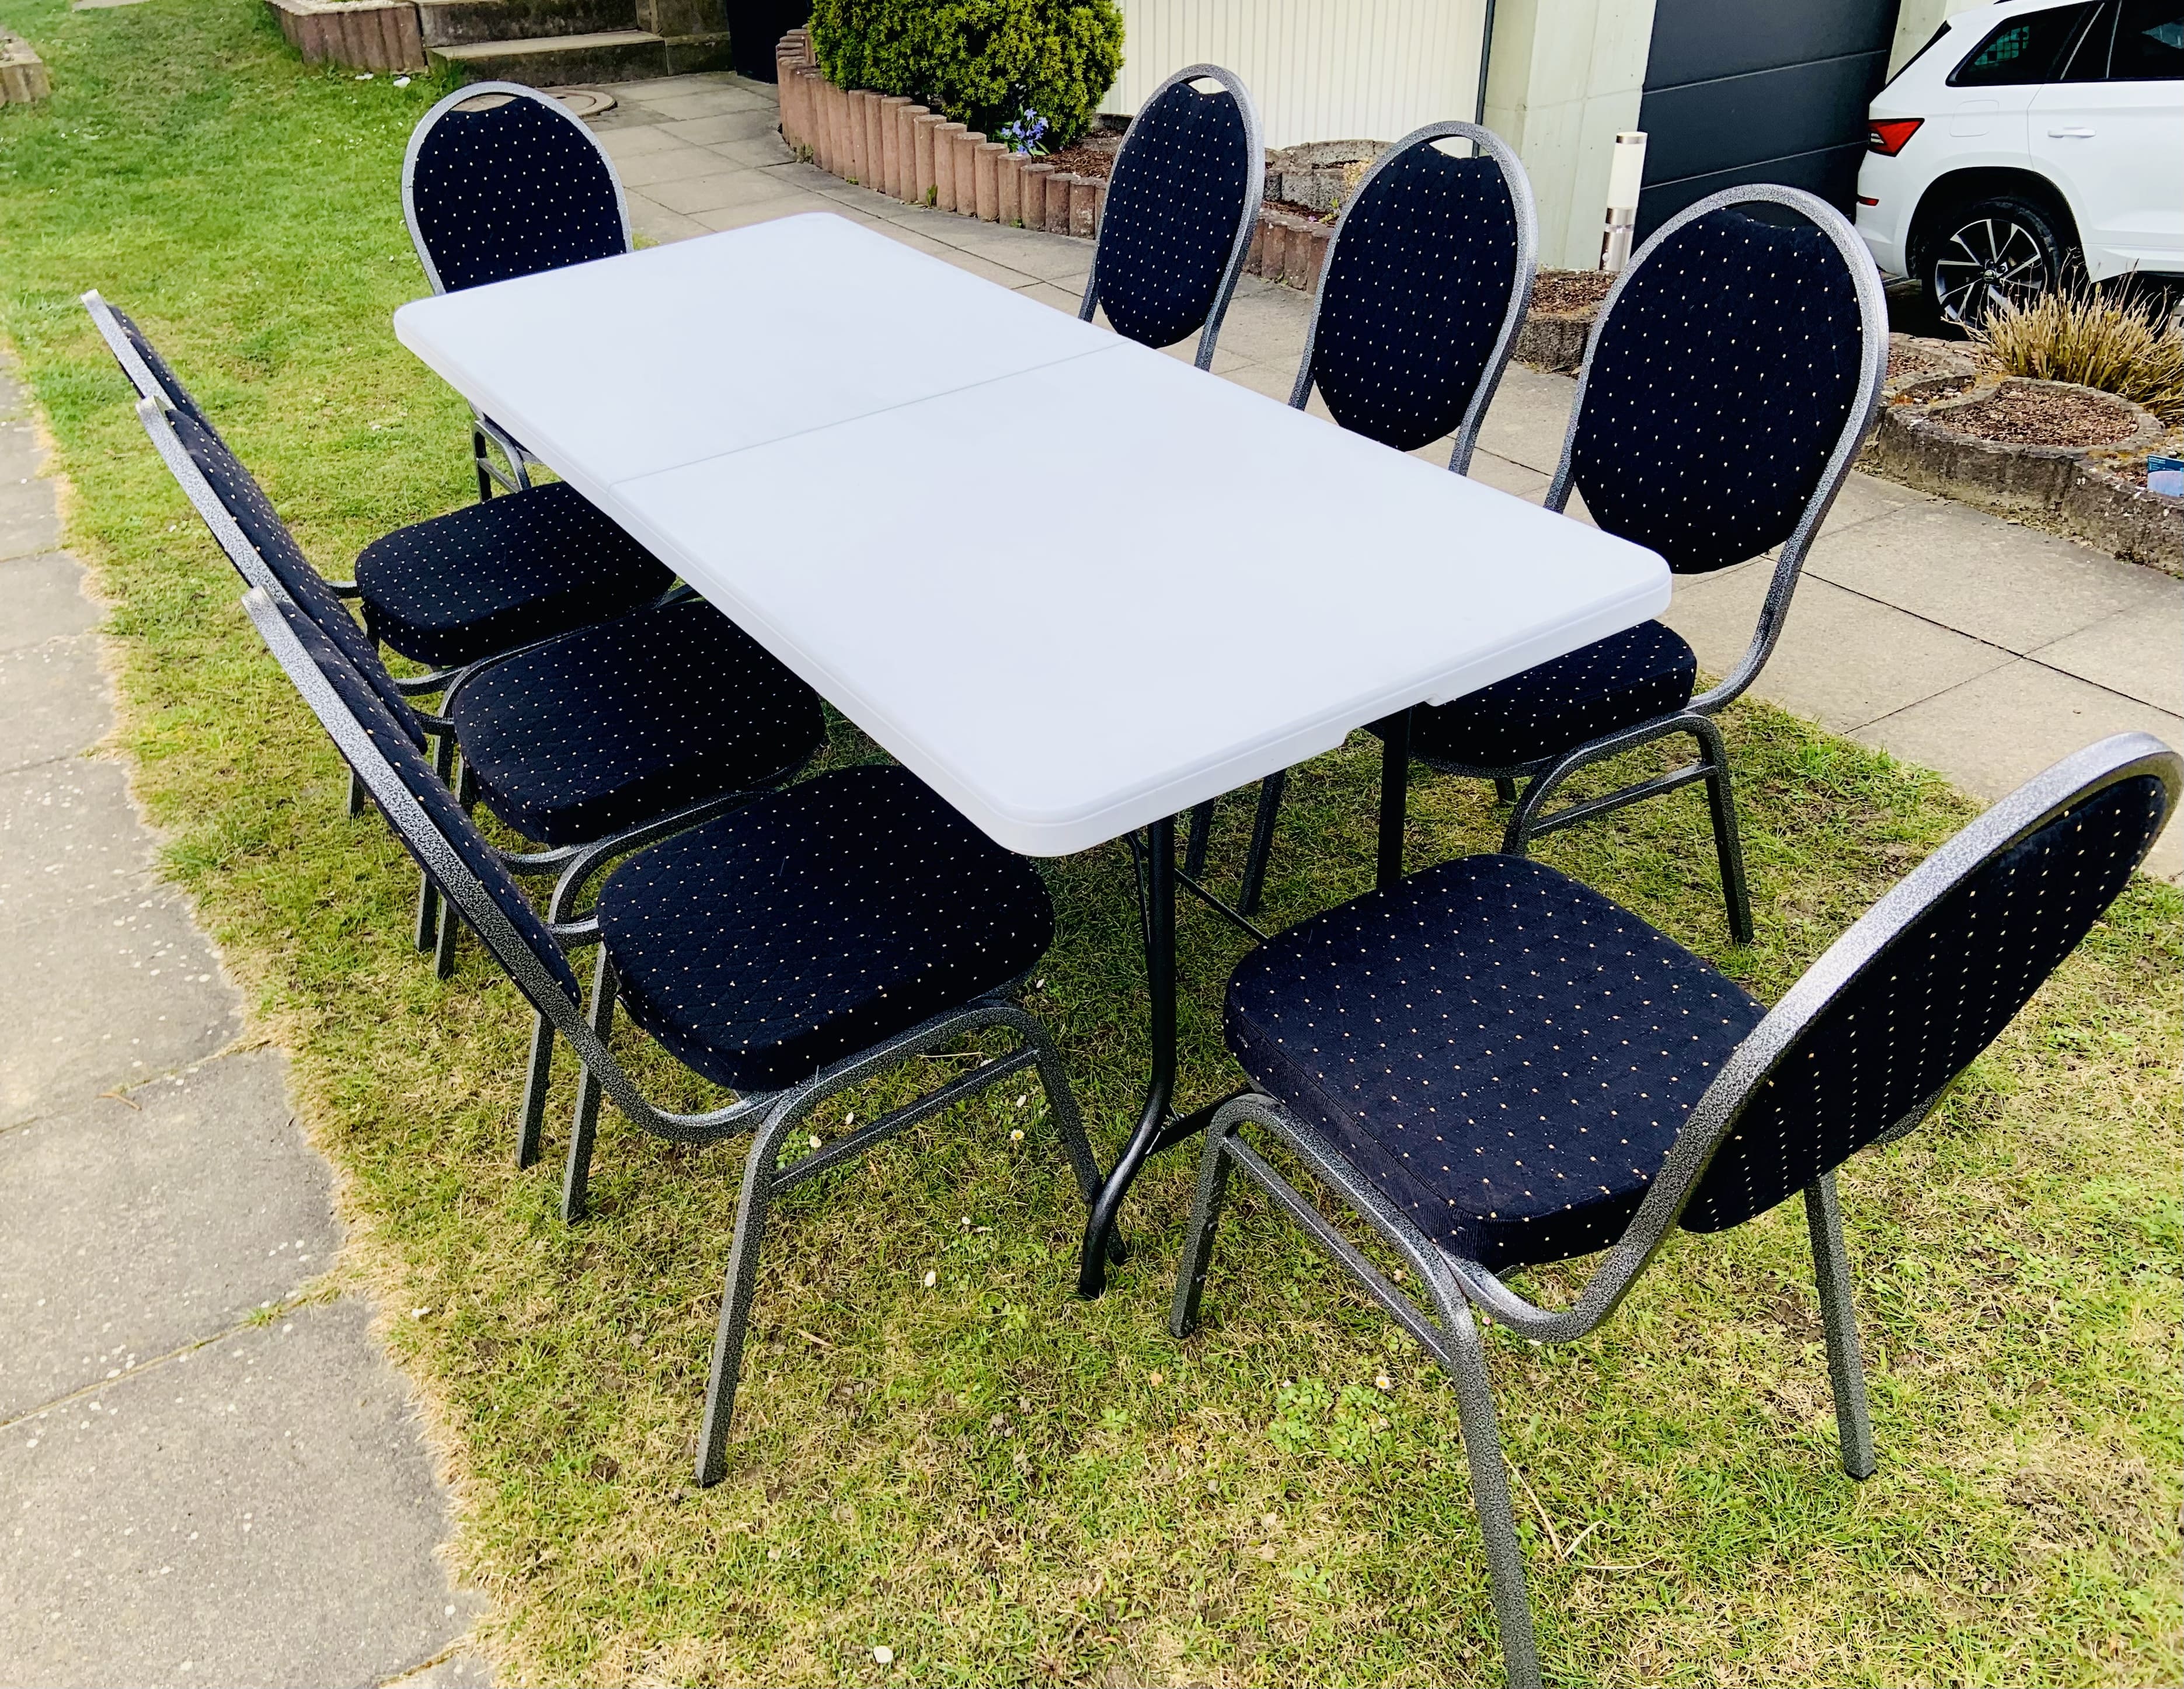 Tisch mit 8 Stühle, Bankettstühle mieten